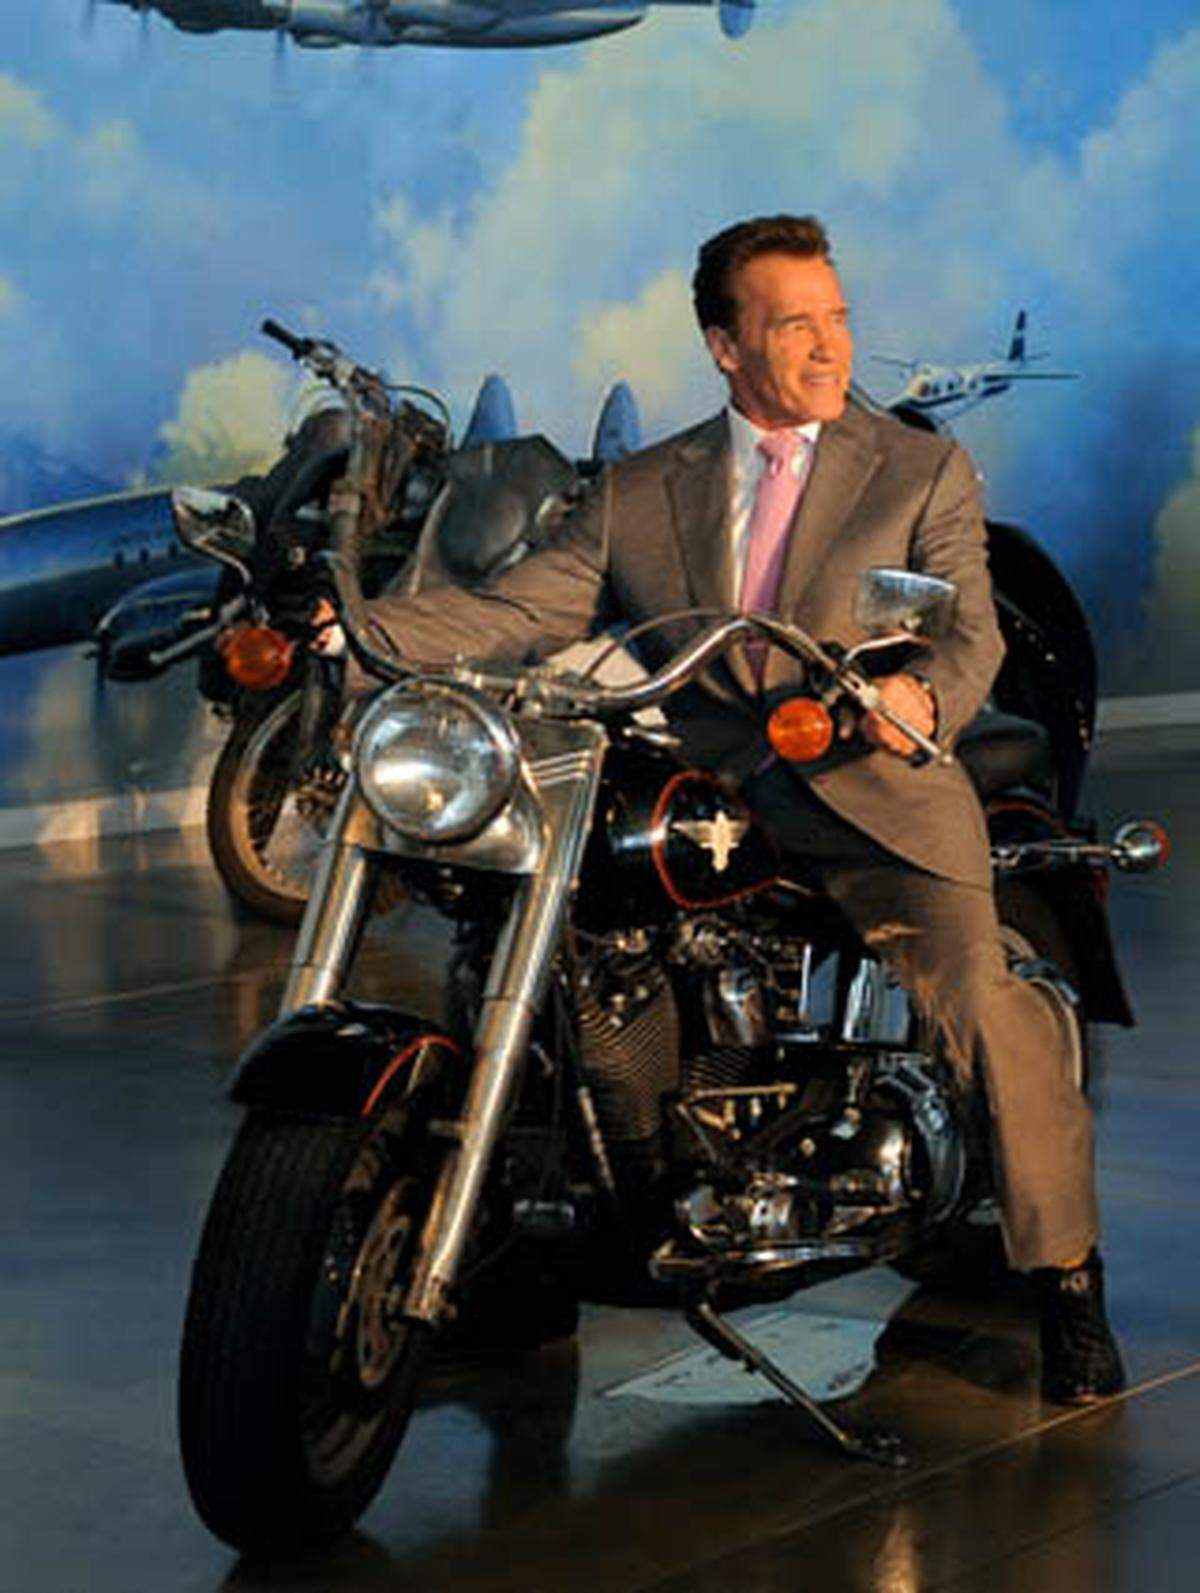 Ein österreichischer Bodybuilder und Schauspieler als Gouverneur von Kalifornien. Arnold Alois Schwarzenegger legte eine Hollywood-reife Karriere hin: In dem steirischen Ort Thal geboren, arbeitete er sich als Bodybuilder bis zum weltweit höchsten Titel 'Mister Universe' hoch, den er 1967 im Alter von 20 Jahren erhielt. Seine anschließende Karriere als Filmschauspieler brachte ihn nach Hollywood, wo er insbesondere mit seiner Rolle als 'Terminator' Weltruhm erlangte. Im August 2003 kandidierte Schwarzenegger als Republikaner für das Amt des Gouverneurs von Kalifornien. Und tatsächlich gewann er die Wahlen, und wurde im November 2003 als 38. Gouverneur des US-Bundesstaates Kalifornien vereidigt.